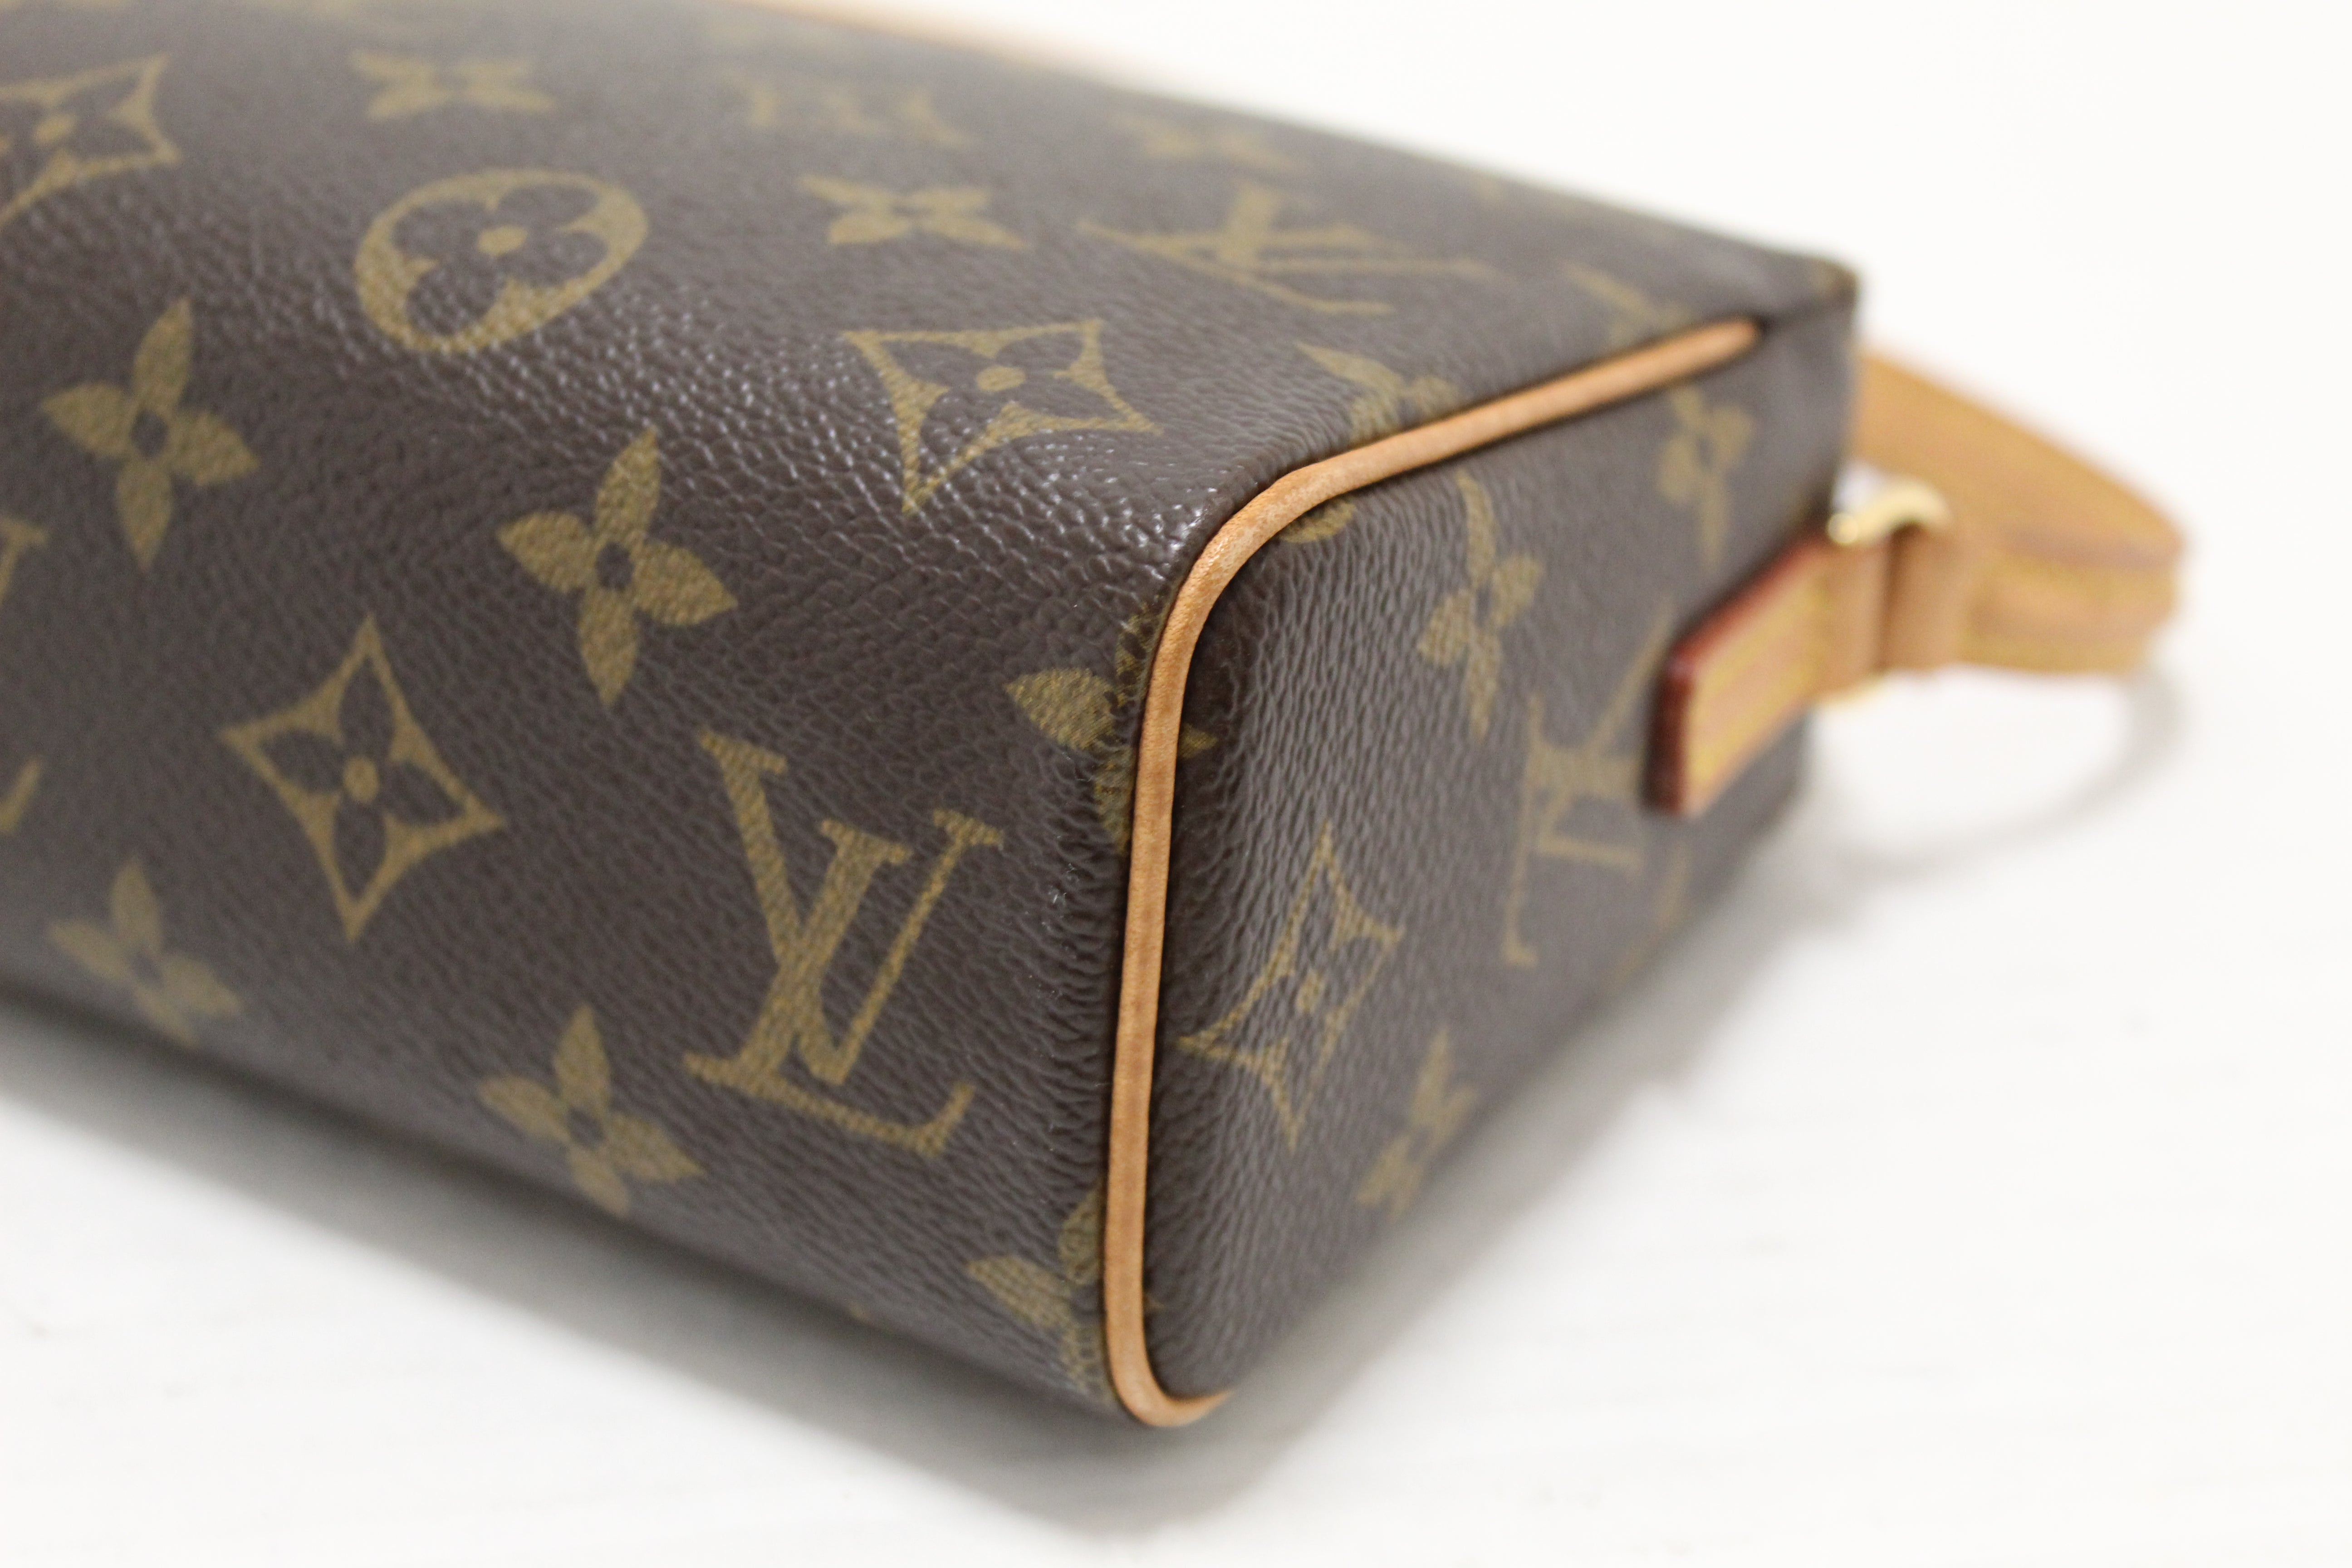 Shop for Louis Vuitton Monogram Canvas Leather Recital Bag